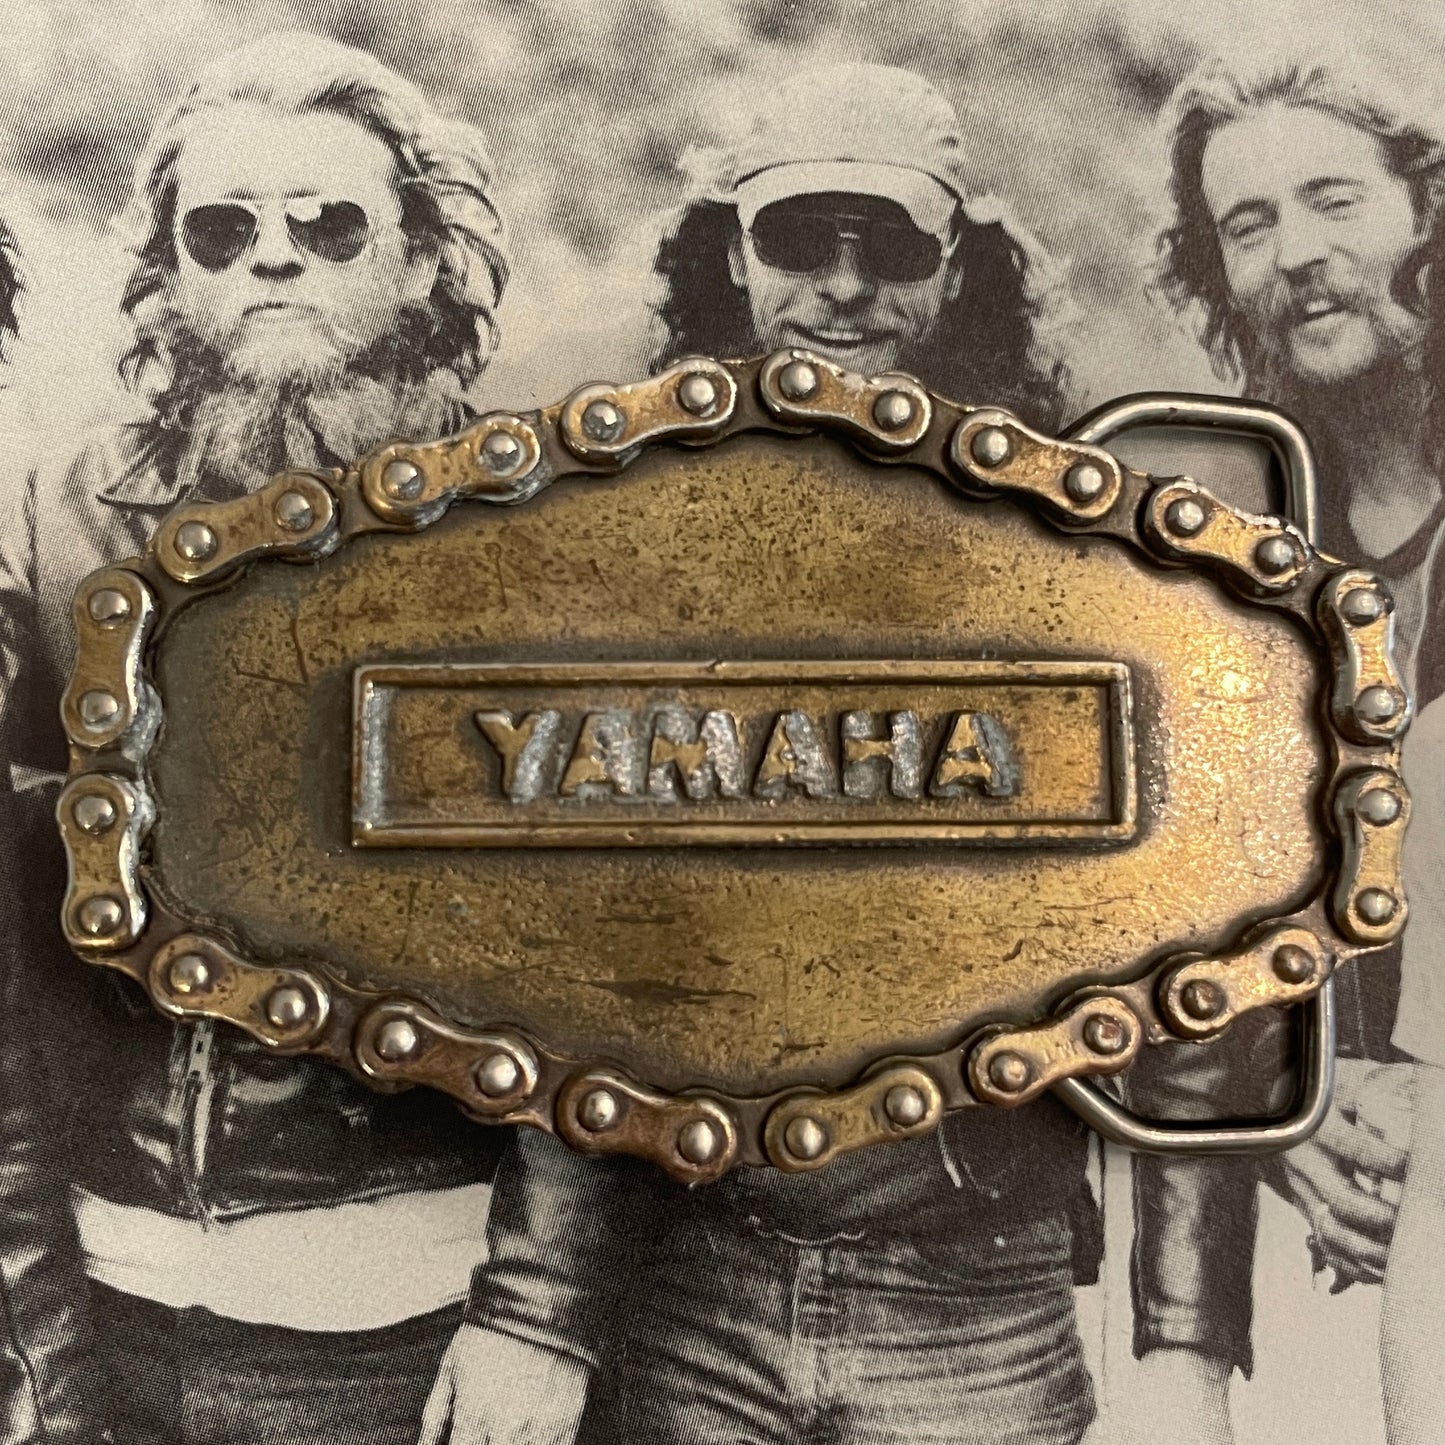 Yamaha Chain Buckle [1976]